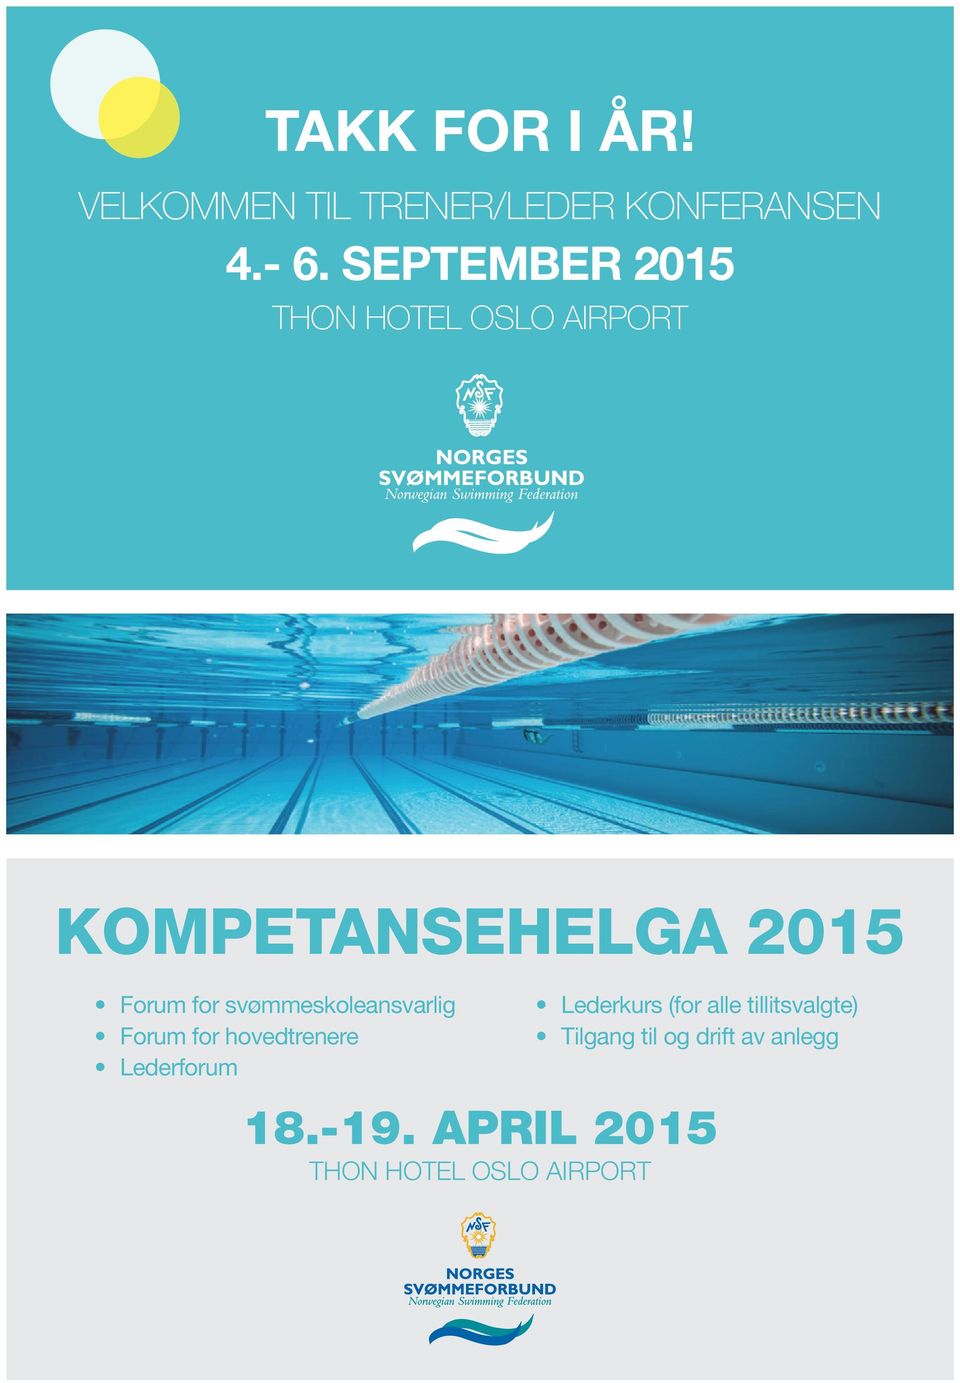 svømmeskoleansvarlig Forum for hovedtrenere Lederforum Lederkurs (for